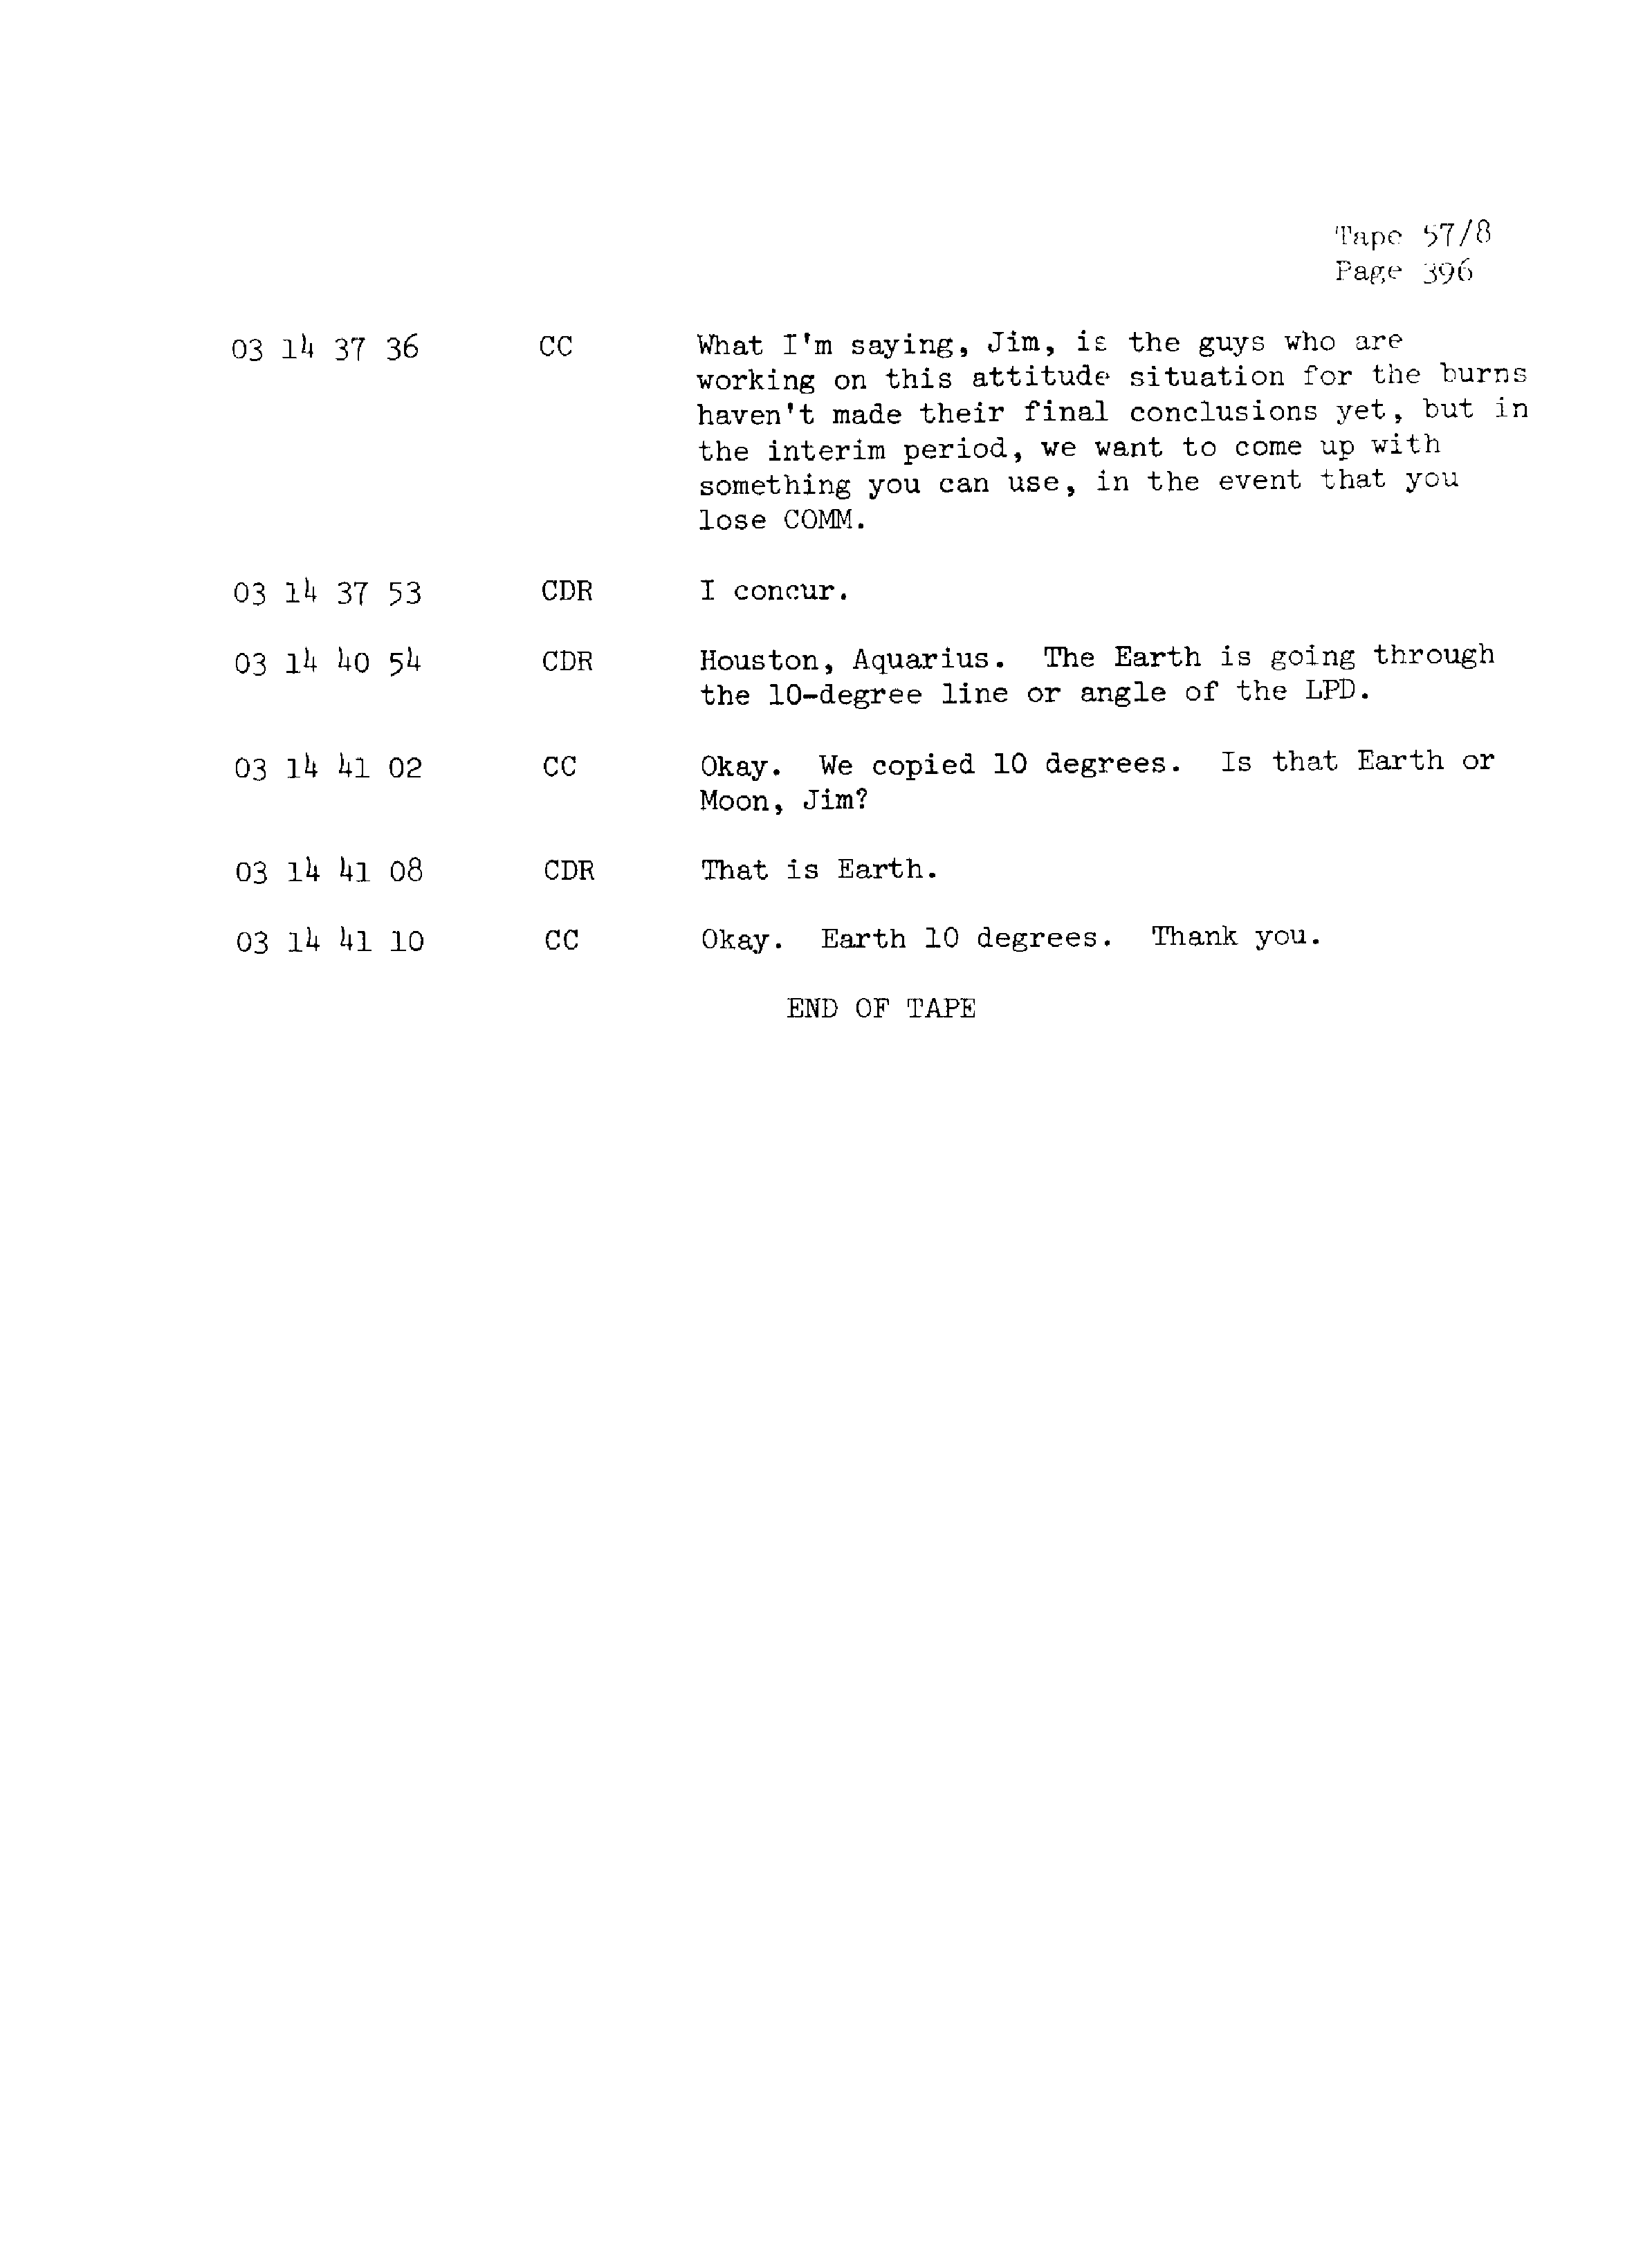 Page 403 of Apollo 13’s original transcript